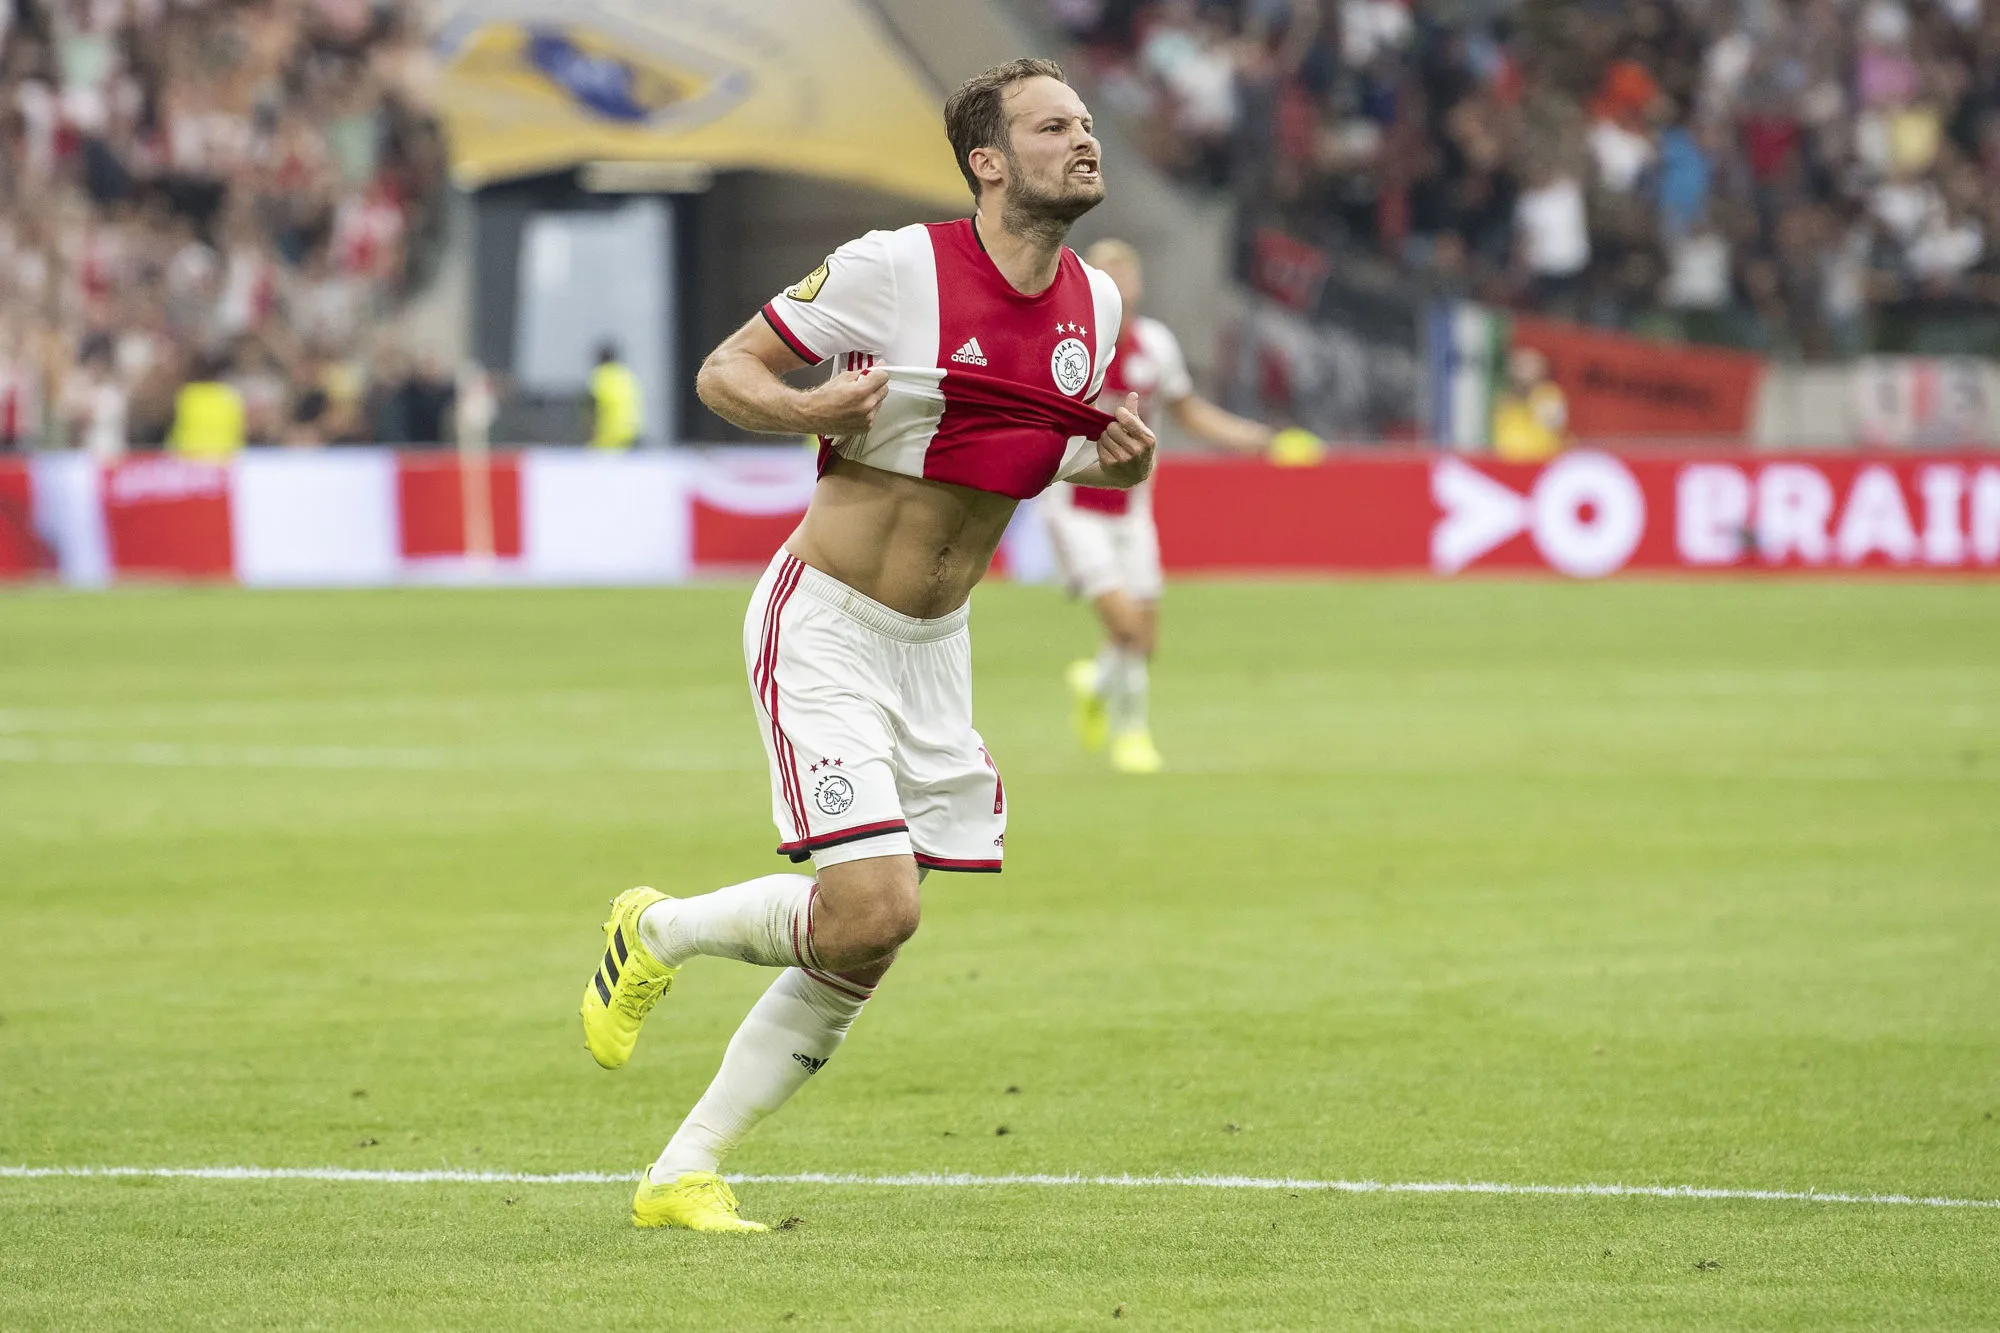 Pronostic Ajax Lille : Analyse, prono et cotes du match de Ligue des champions